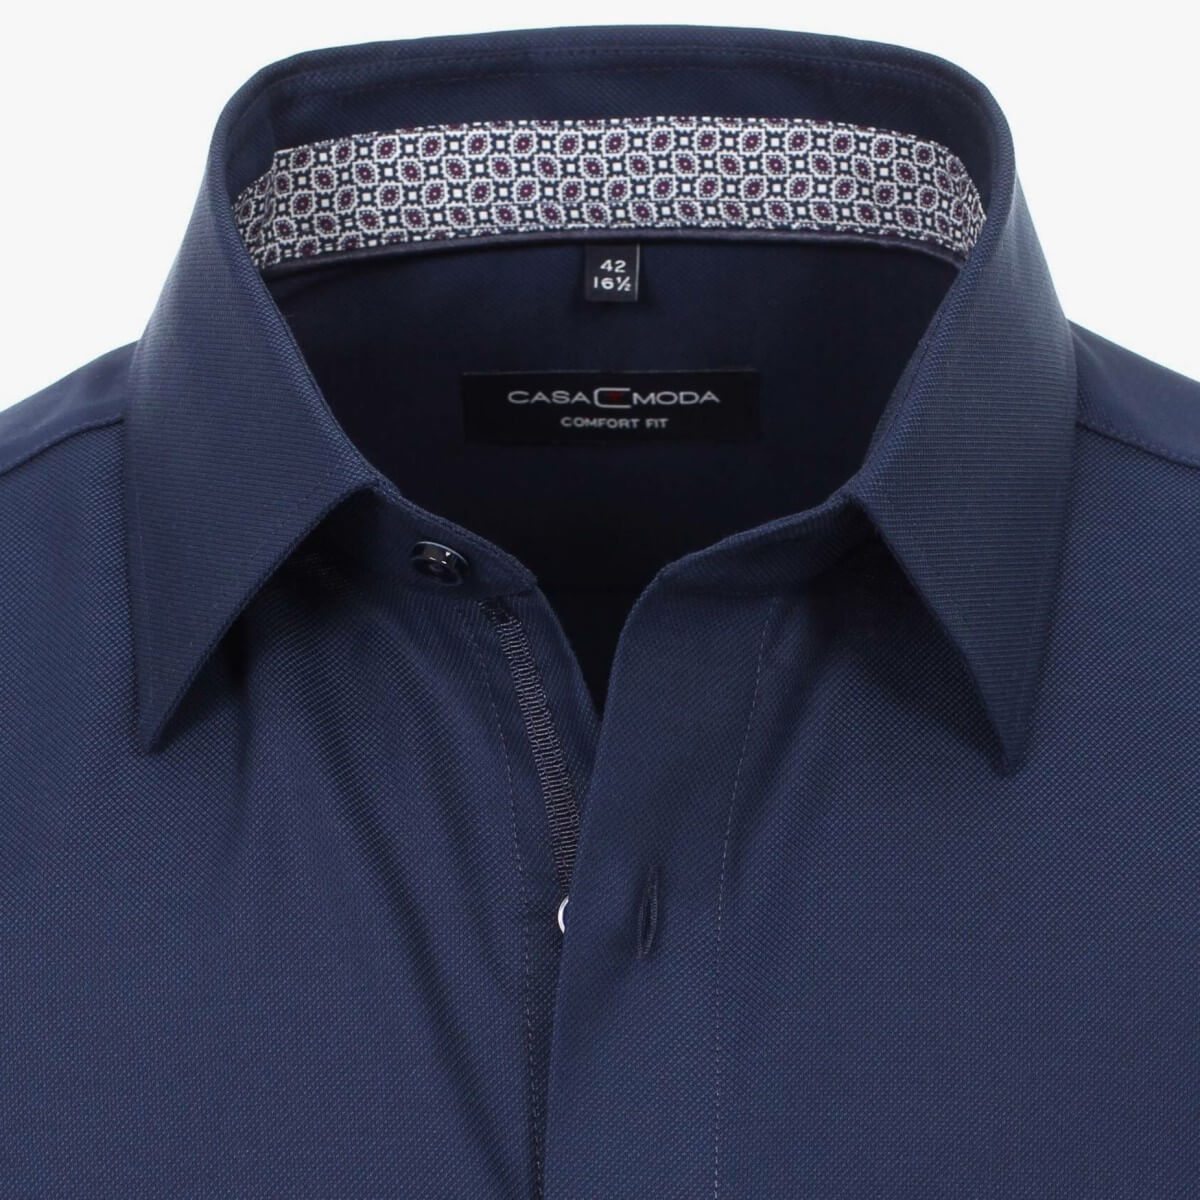 Сорочка мужская Casamoda Comfort Fit 303523000-108 синяя с отделкой